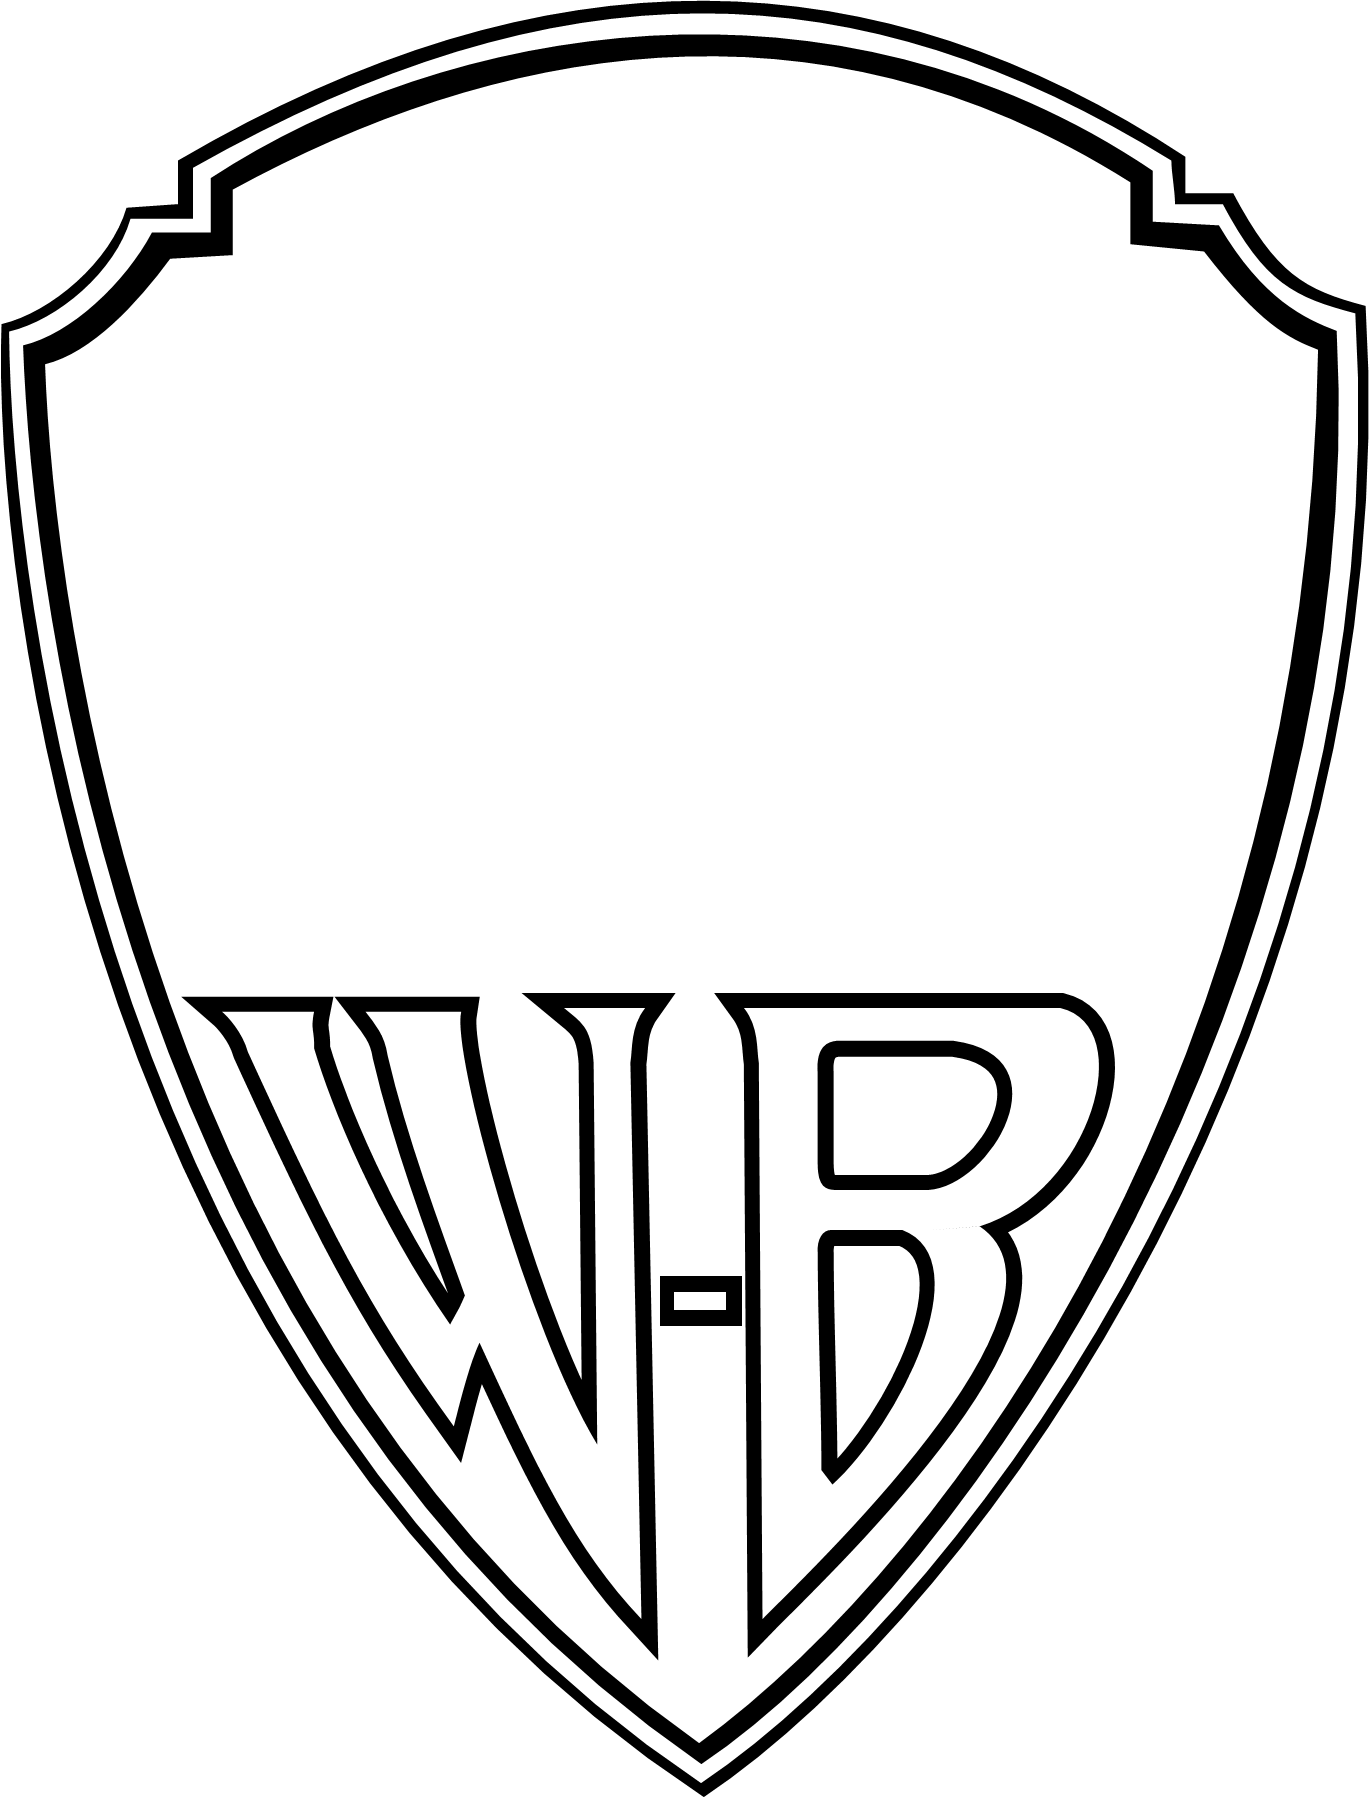 WarnerBros Shield Logo - Warner Bros. 1923.png